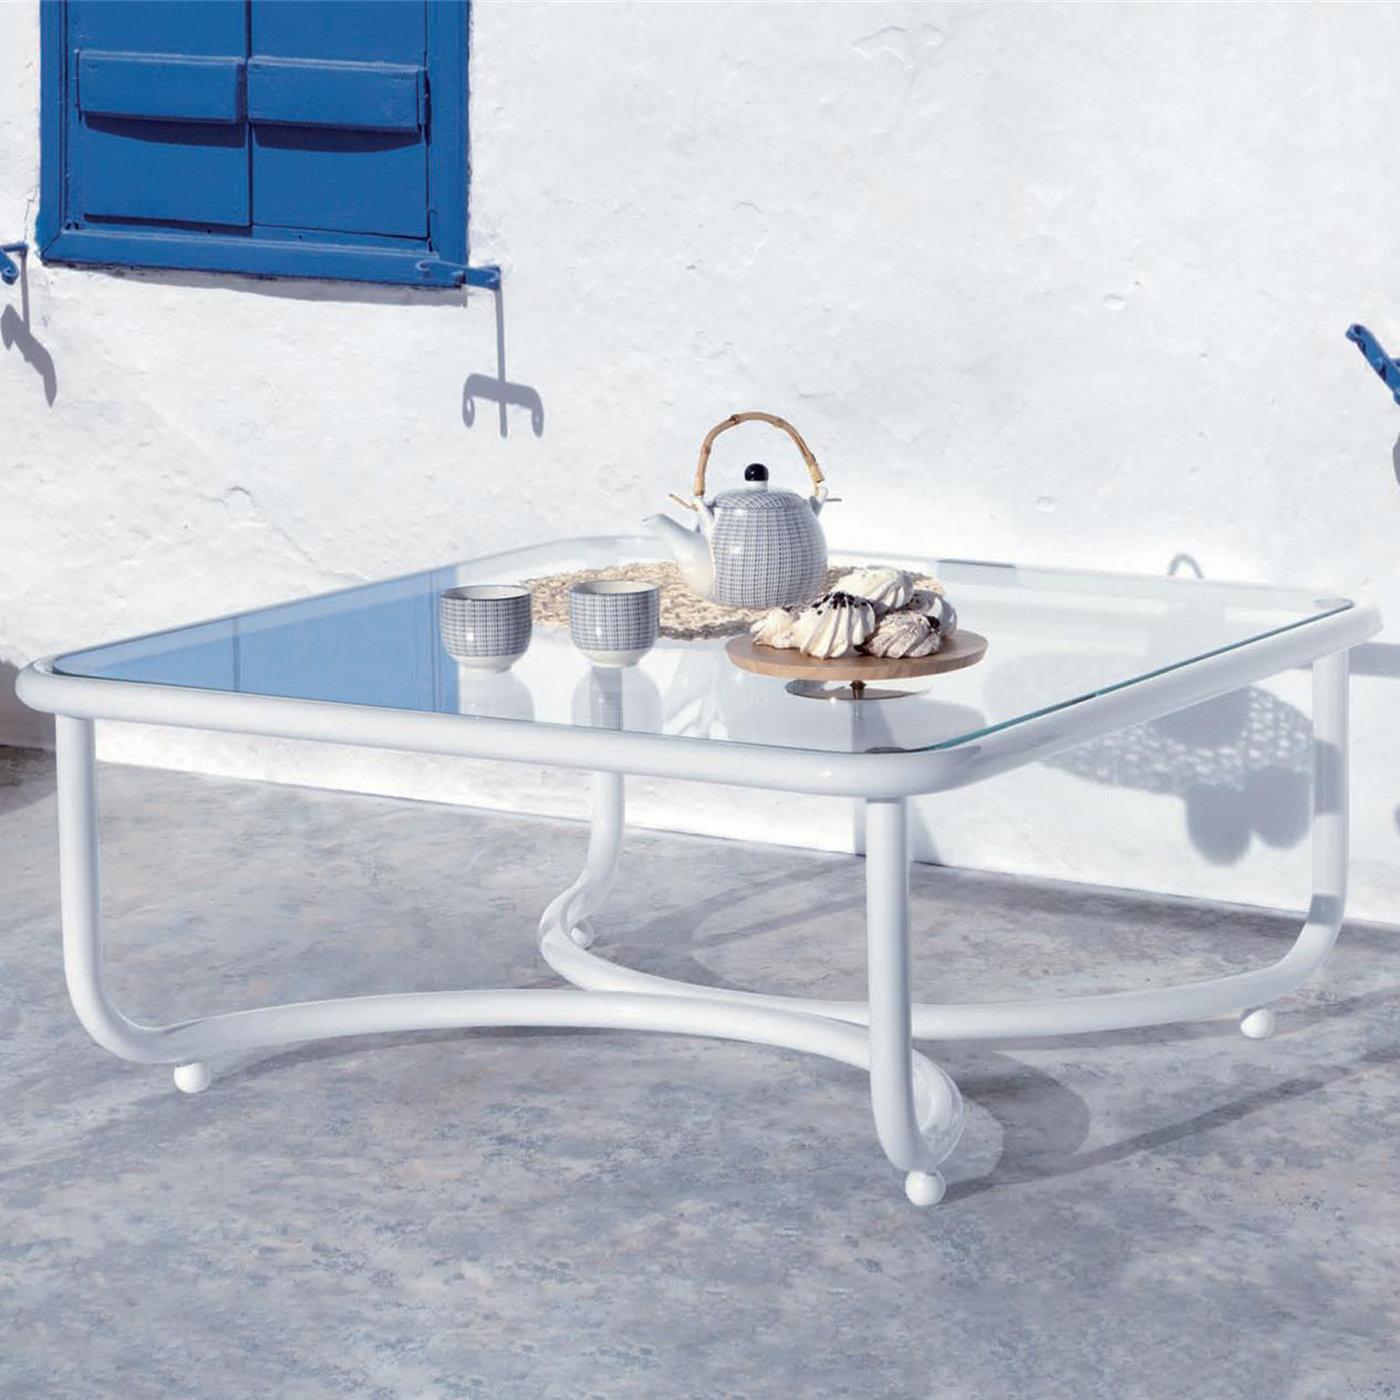 Italian Locus Solus White Low Table by Gae Aulenti